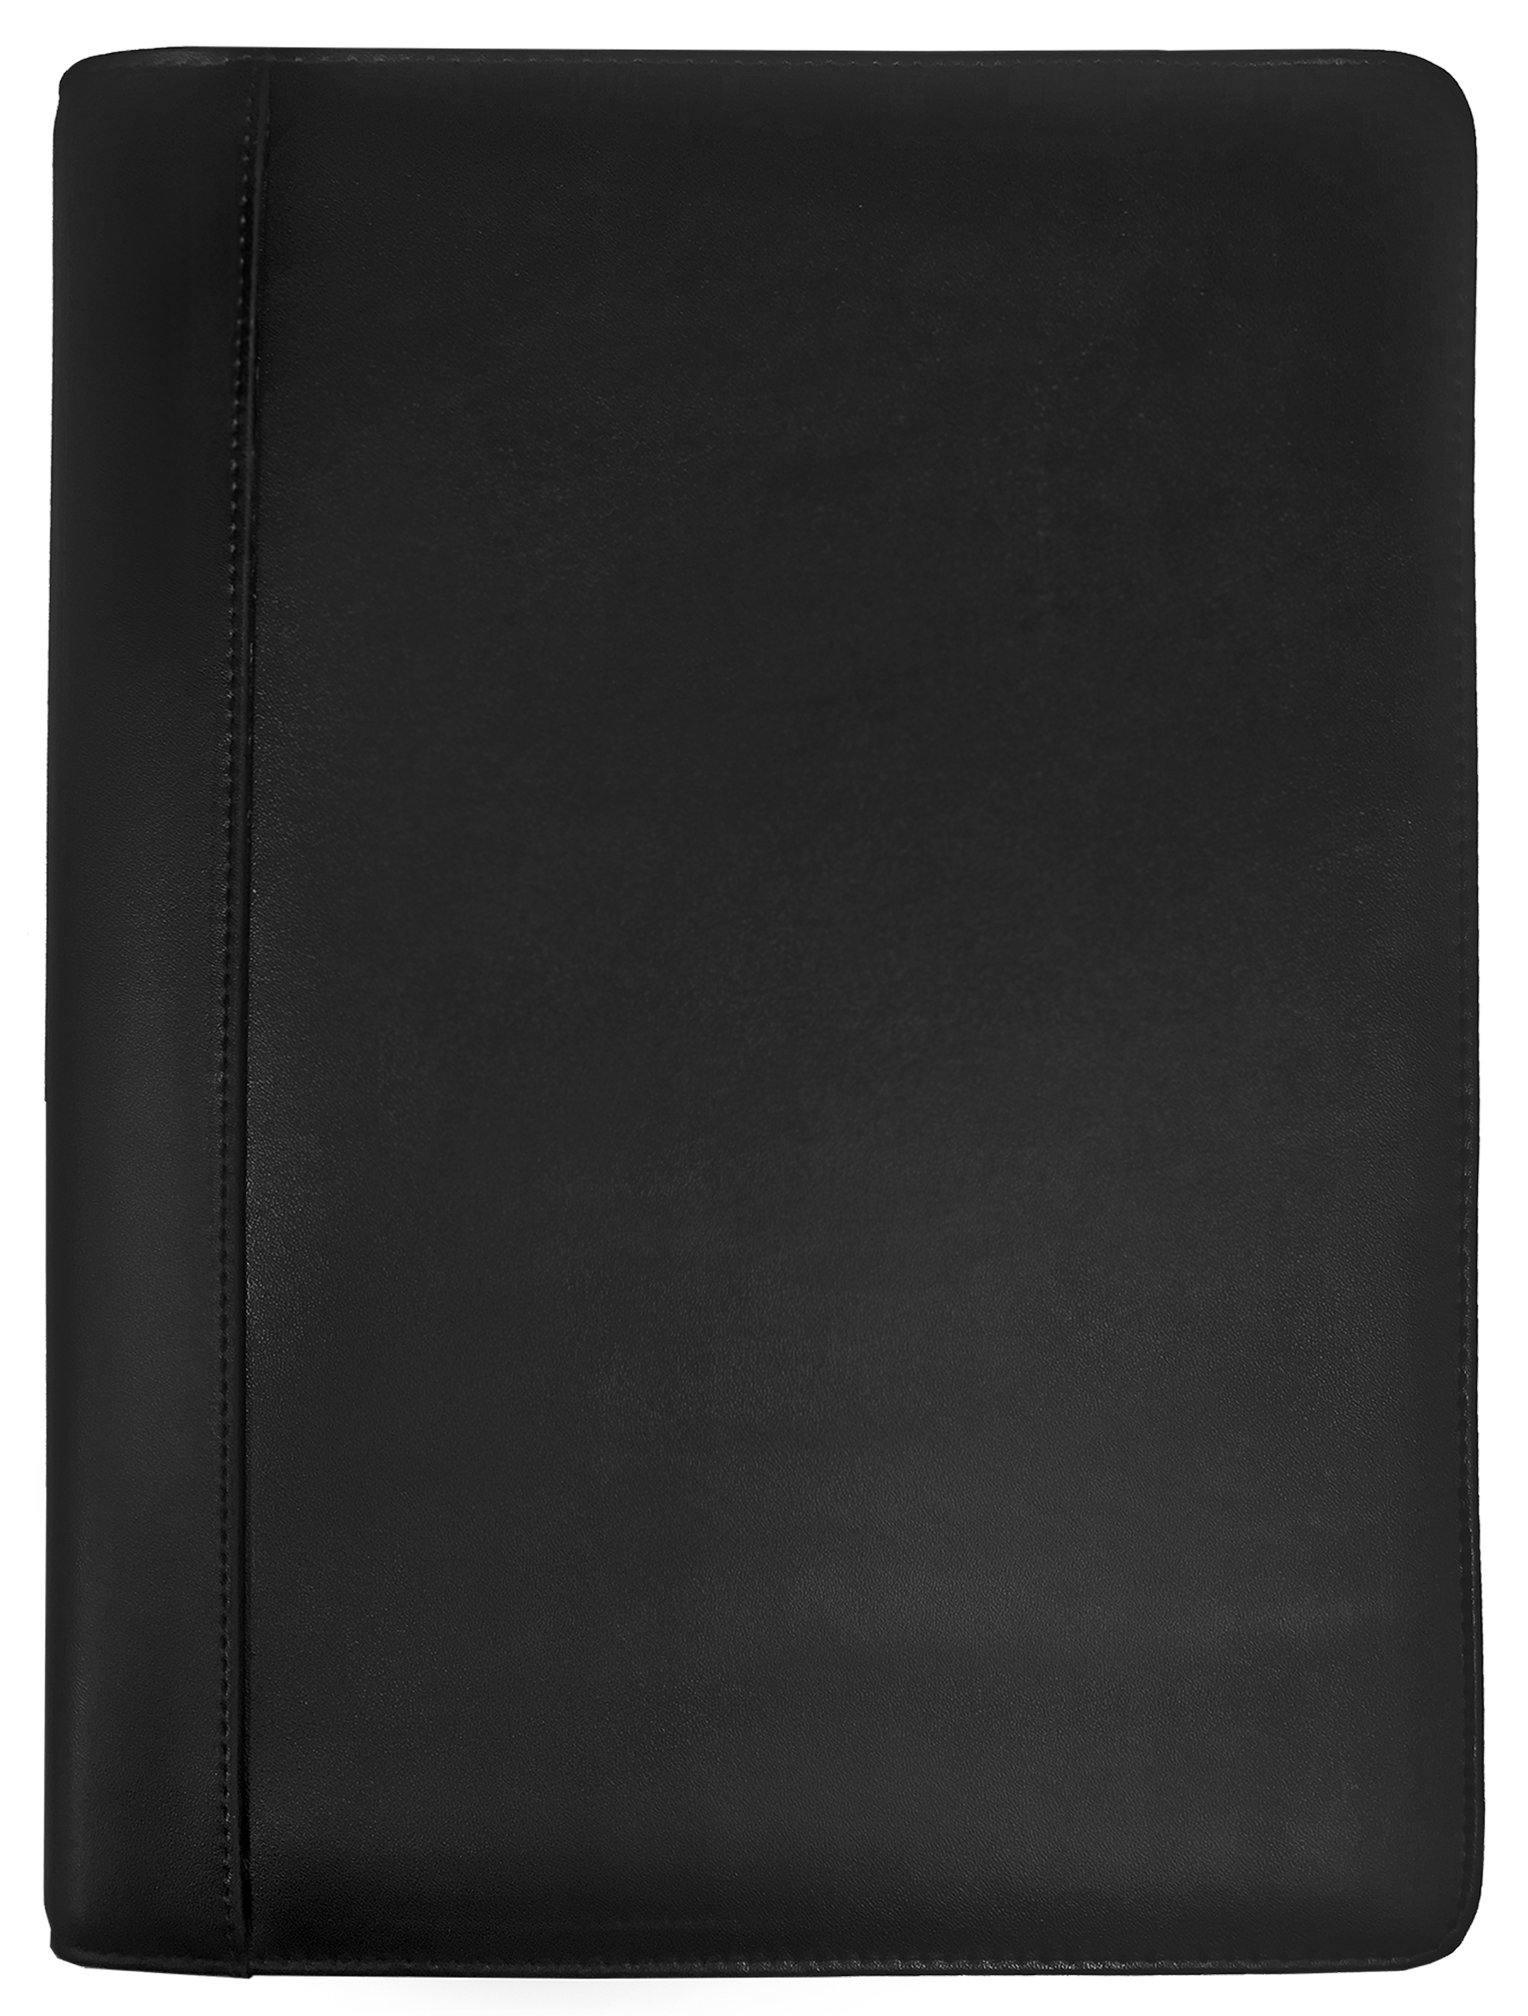 A4 Zippered Executive Portfolio (Leather) - Collins Debden